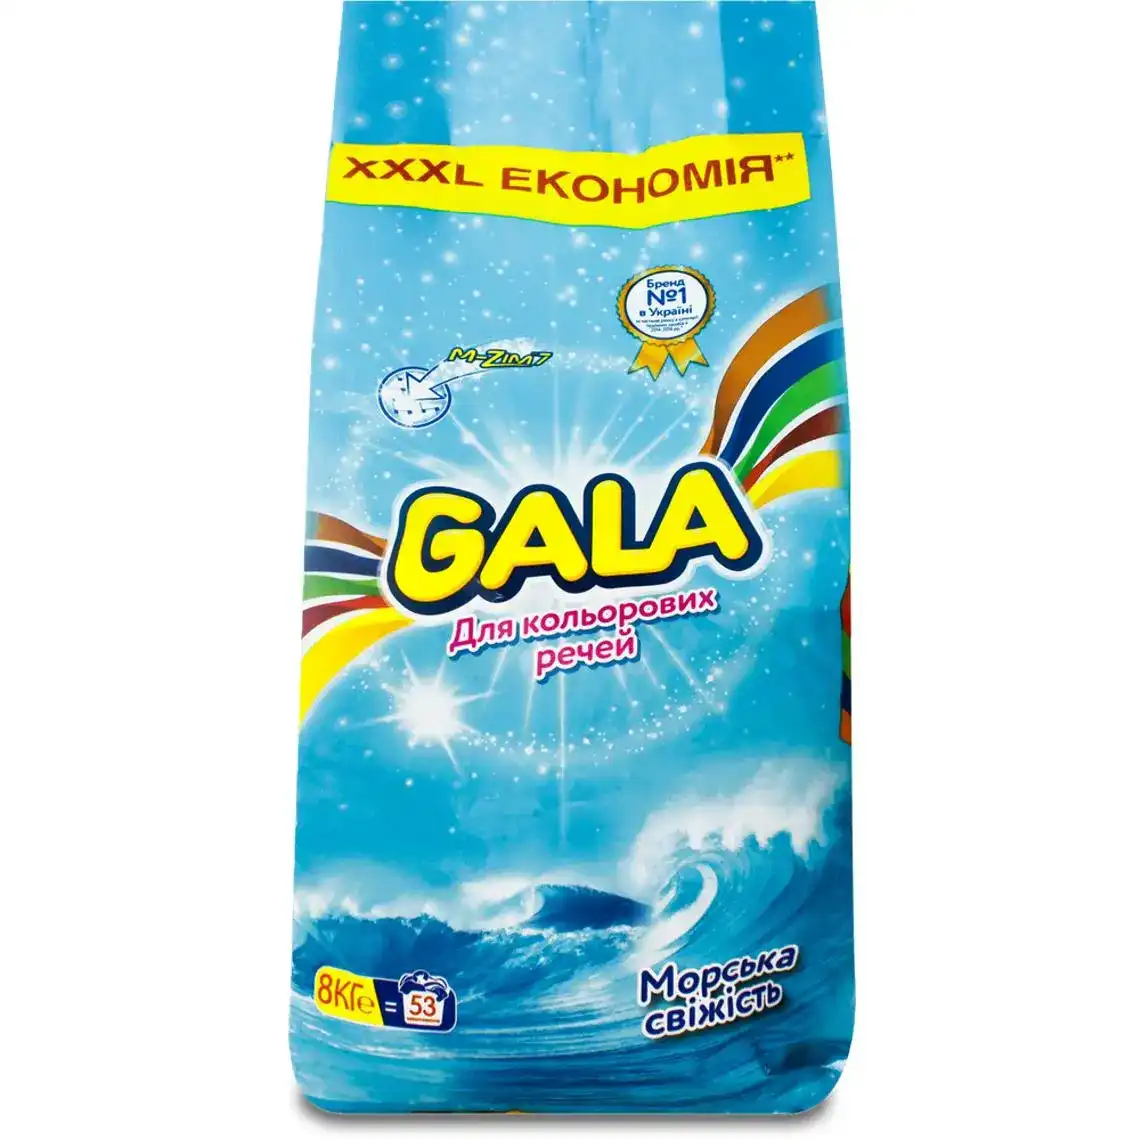 Порошок пральний Gala для кольорових речей морська свіжість 8 кг